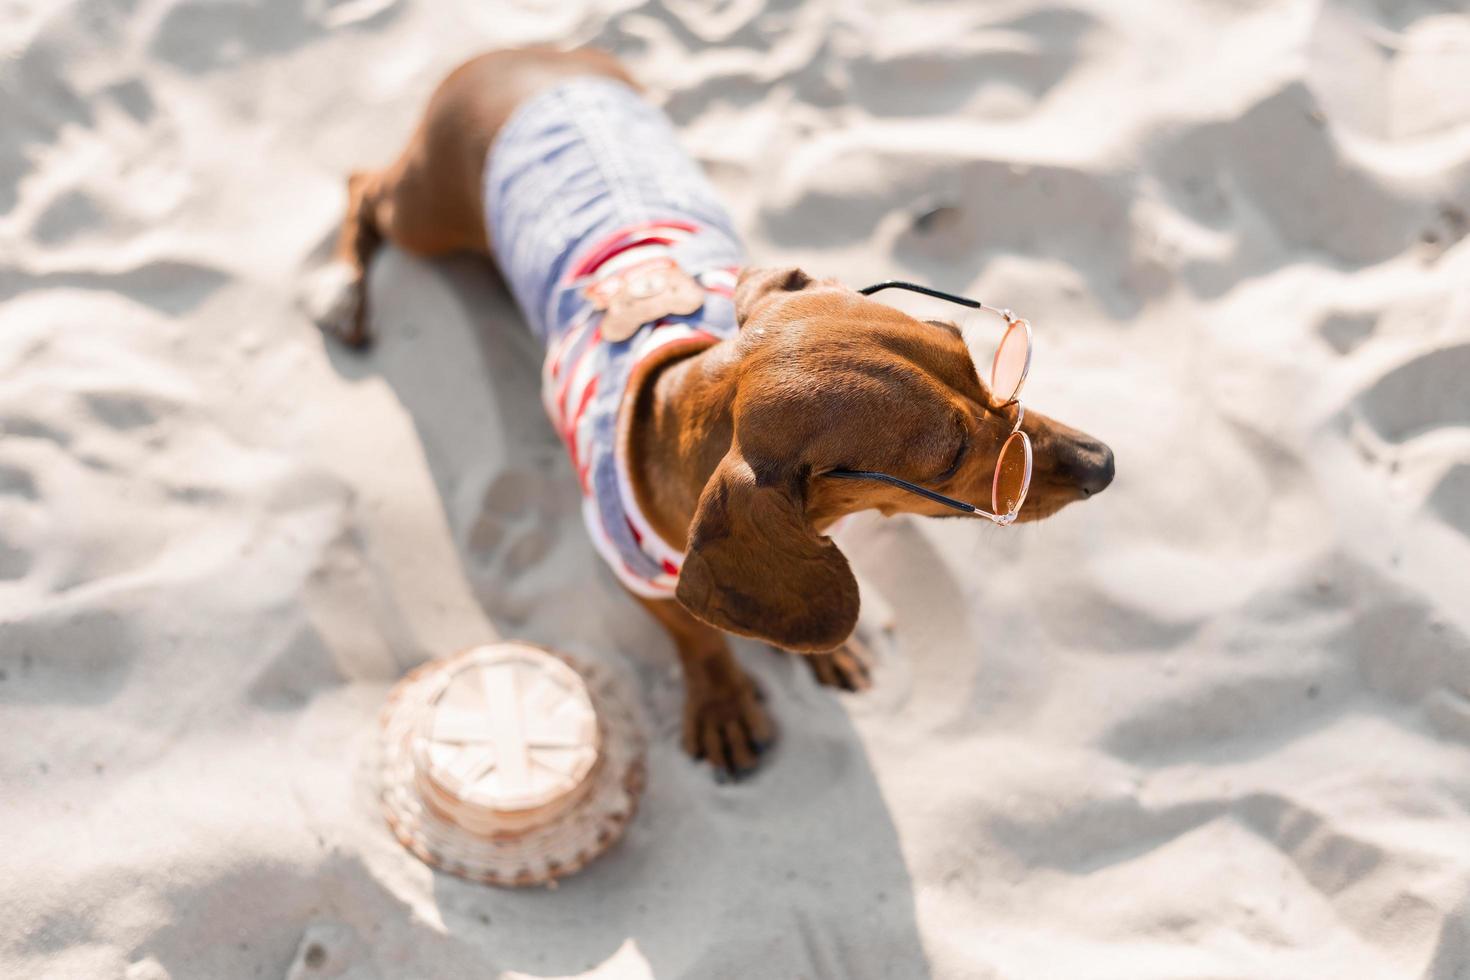 Zwergdackel in einem gestreiften Hundeoverall und einer roten Mütze sonnt sich an einem Sandstrand. Hundereisender, Blogger, Reiseblogger. Hund genießt einen Spaziergang an der frischen Luft im Freien. hochwertiges Foto